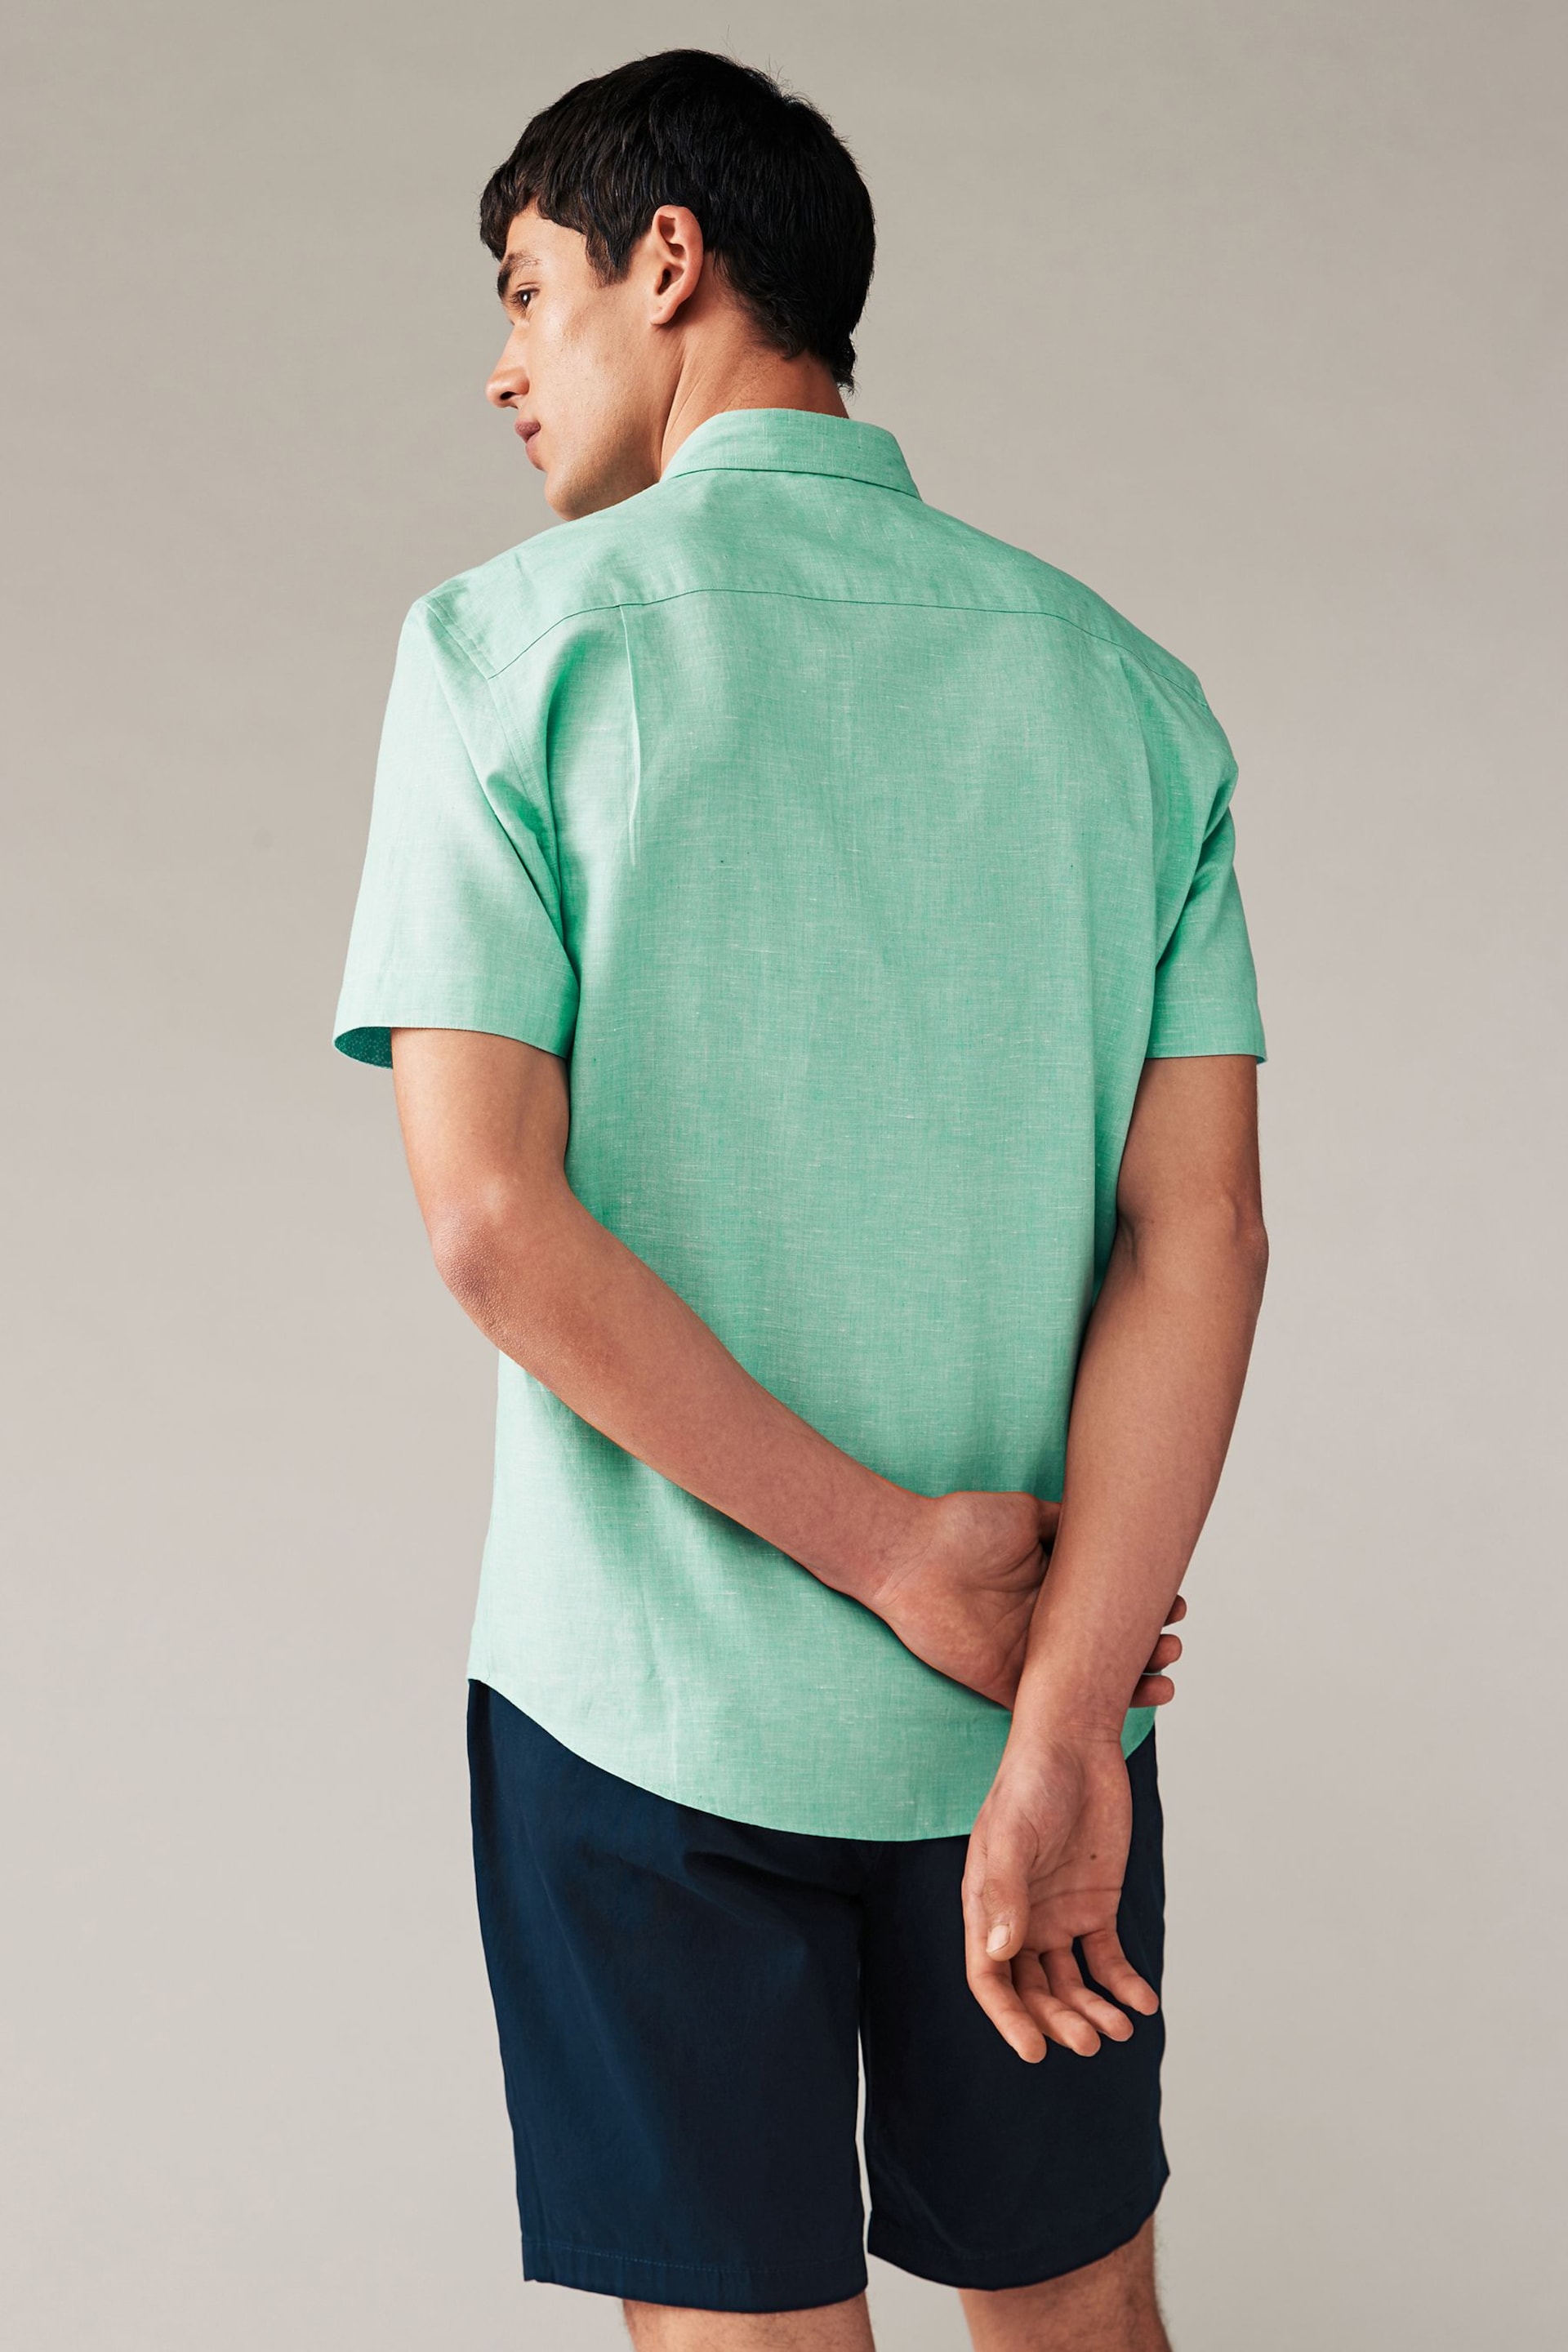 Mint Green Regular Fit Trimmed Linen Blend Short Sleeve Shirt - Image 4 of 8